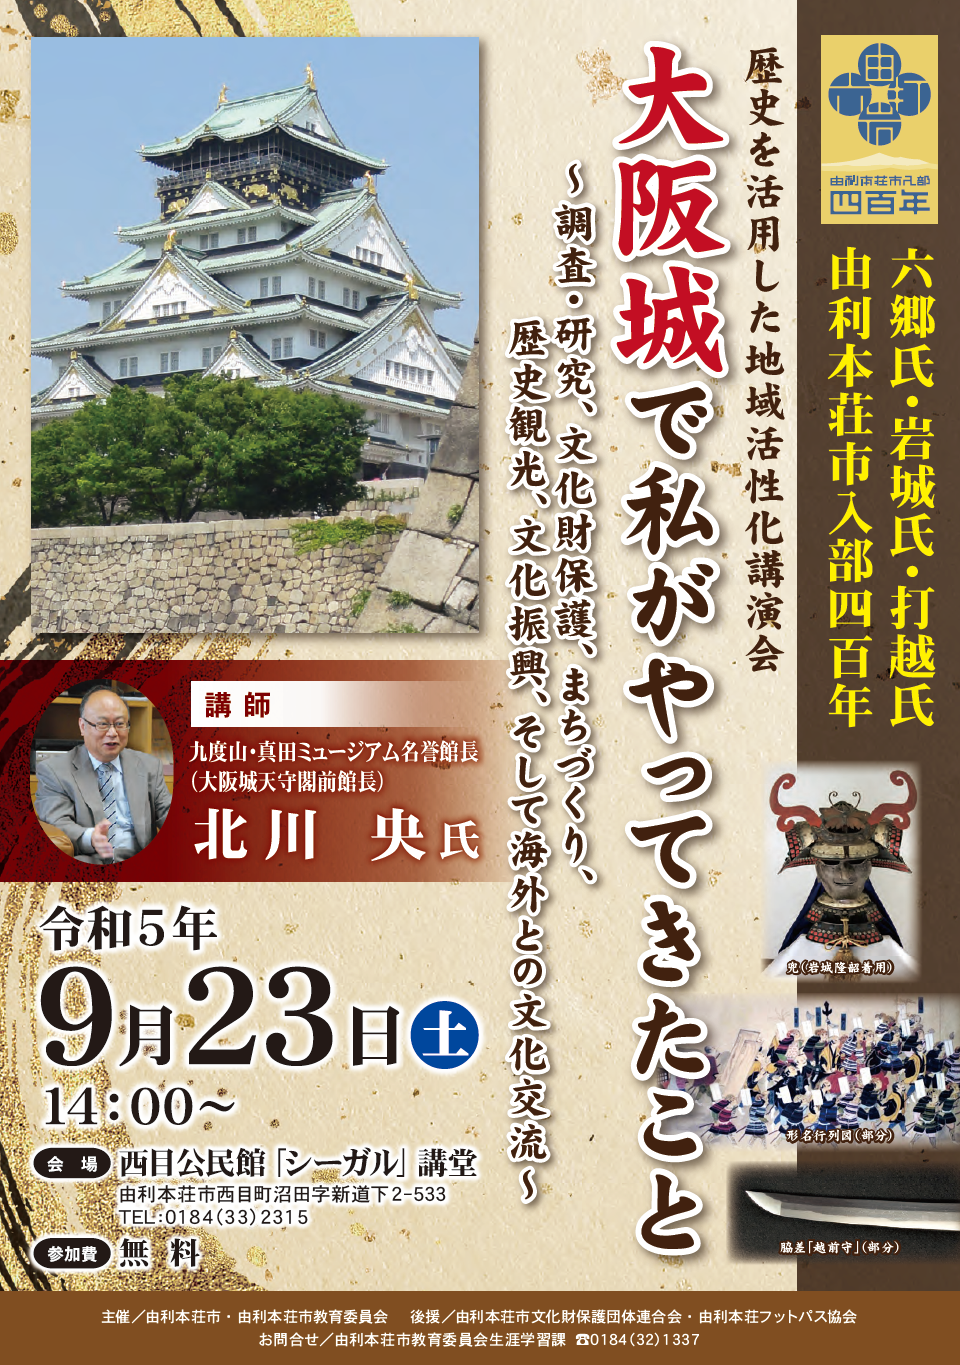 地域活性化講演会「大阪城で私がやってきたこと」